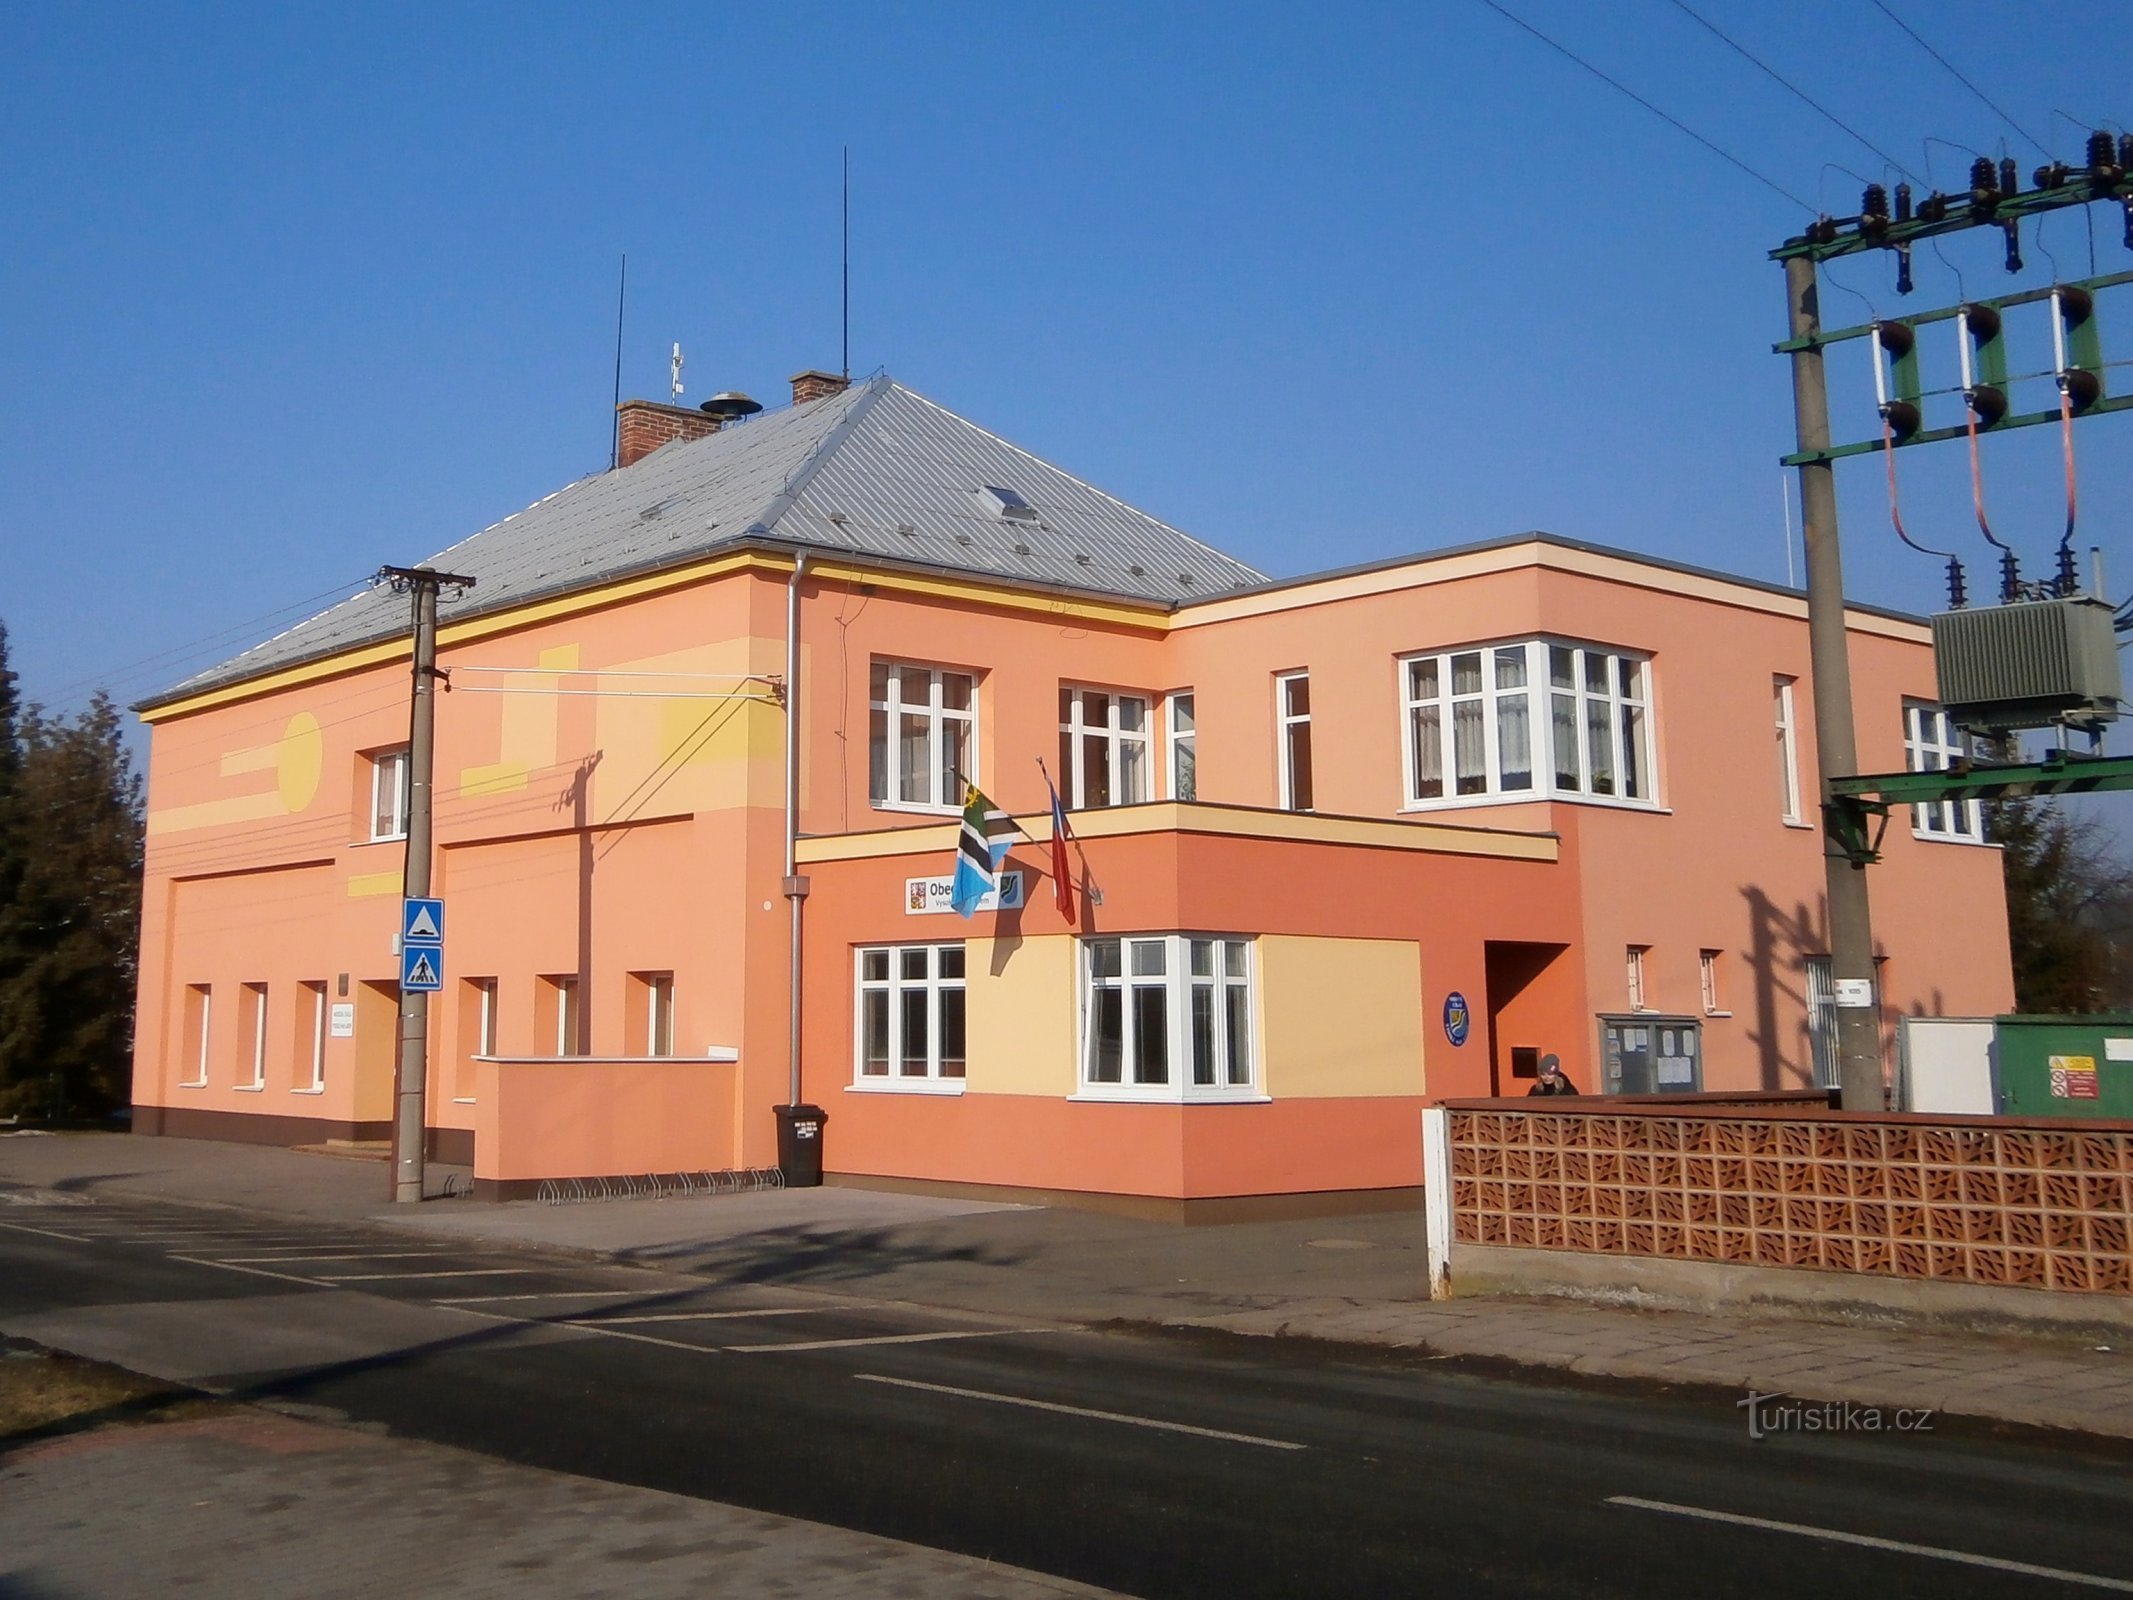 Nhà trẻ và văn phòng thành phố (Vysoká nad Labem)